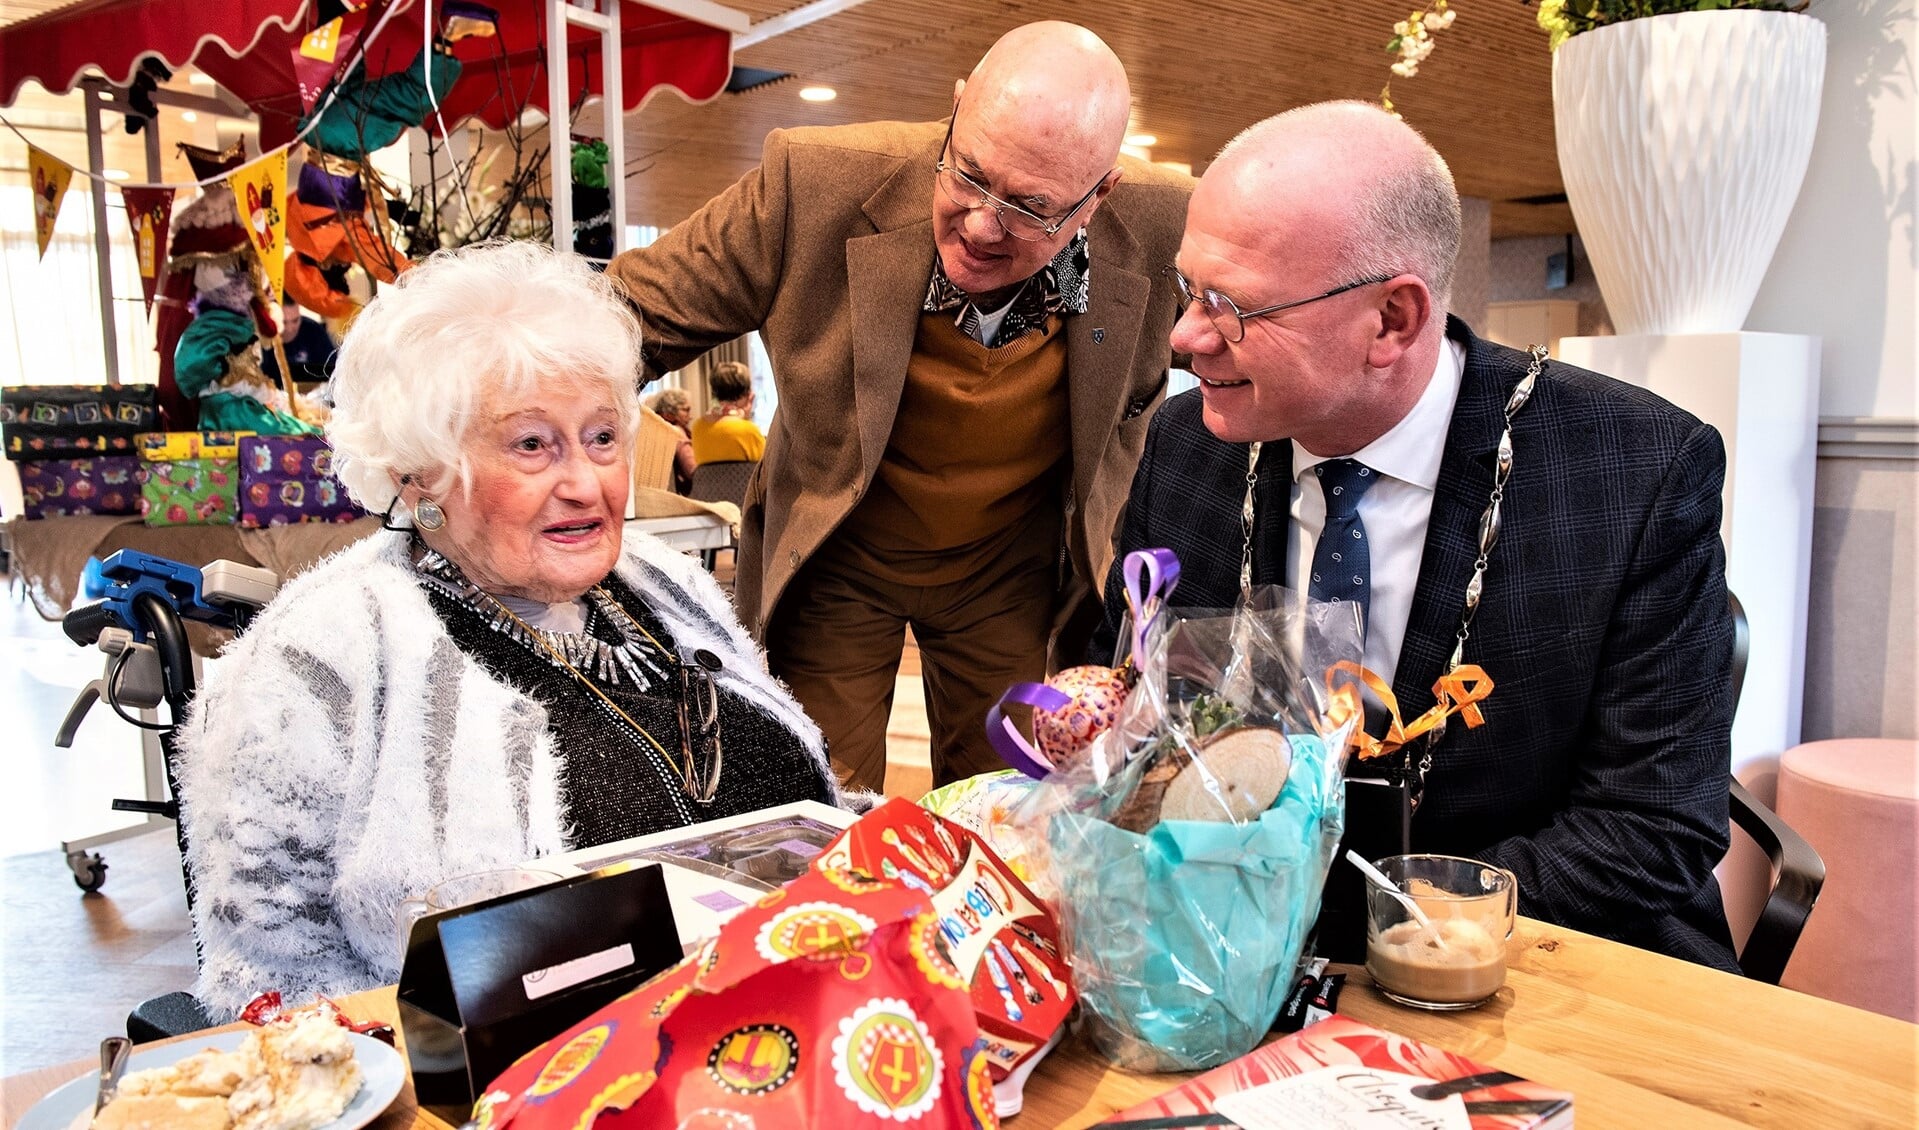 De 106-jarige mevrouw Van Ham in gesprek met burgemeester Tigelaar. Zoon Hendrik luistert aandachtig toe (foto: Michel Groen).